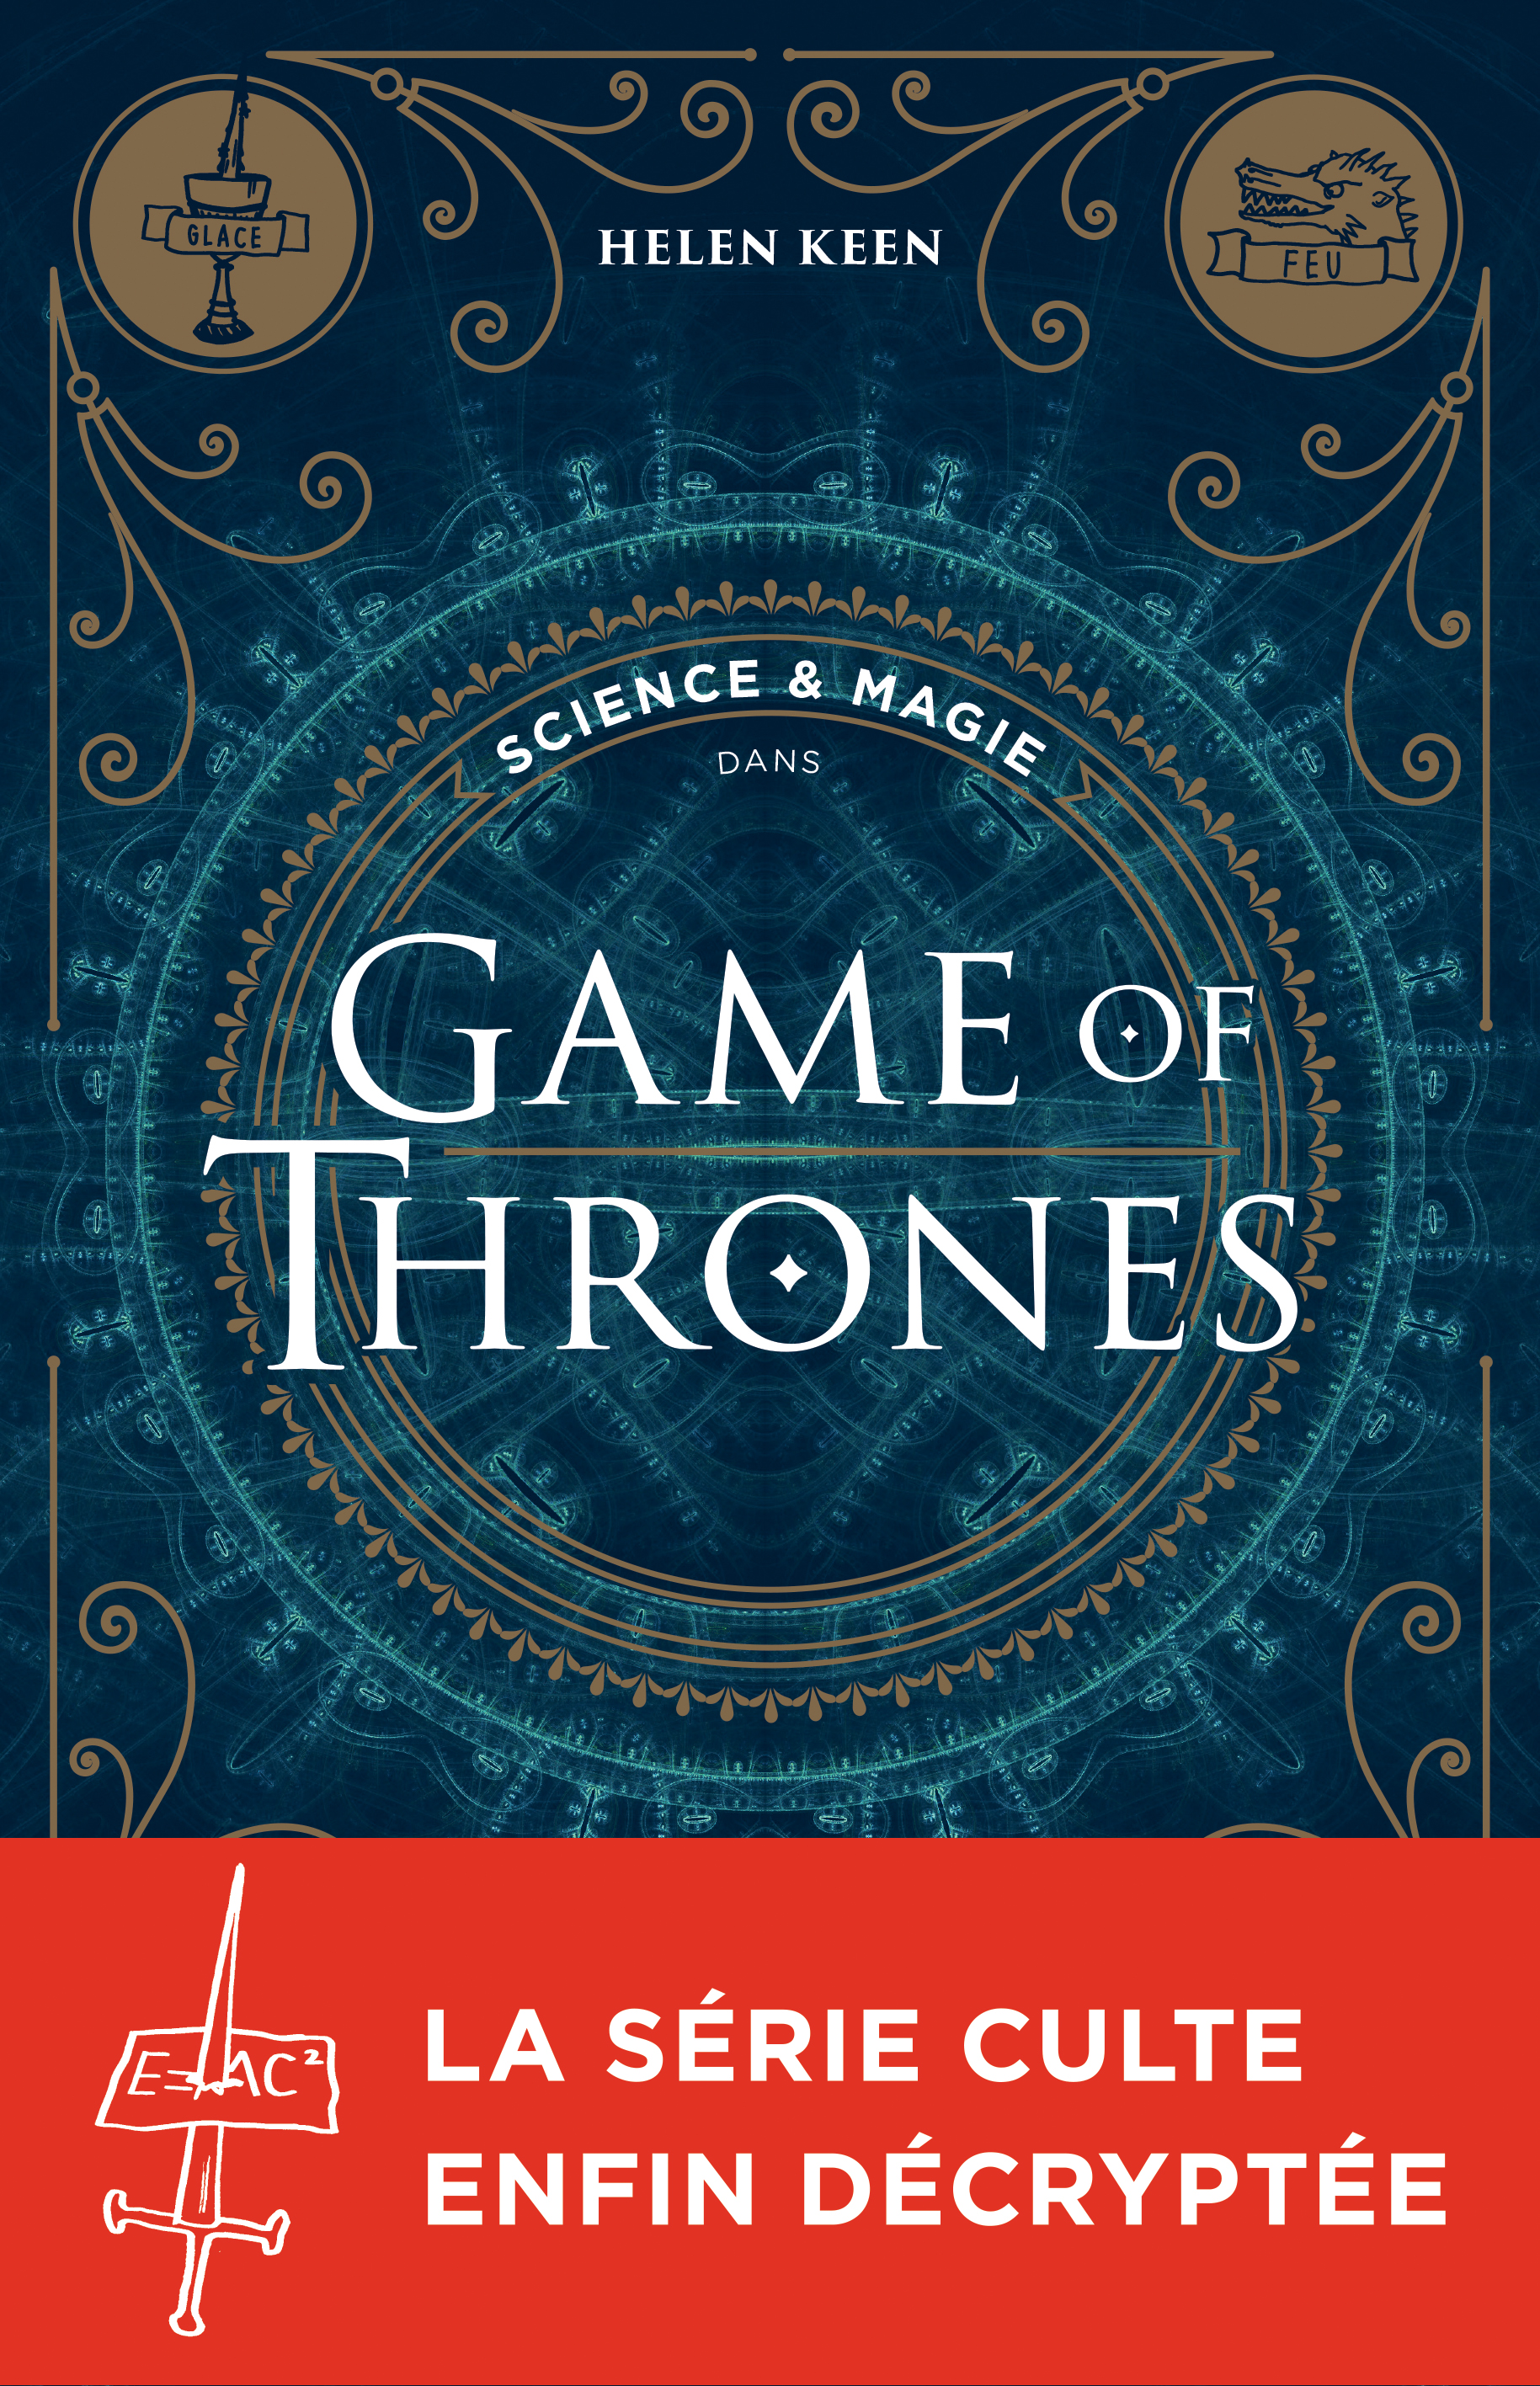 Couverture du livre Science & magie dans Game of Thrones